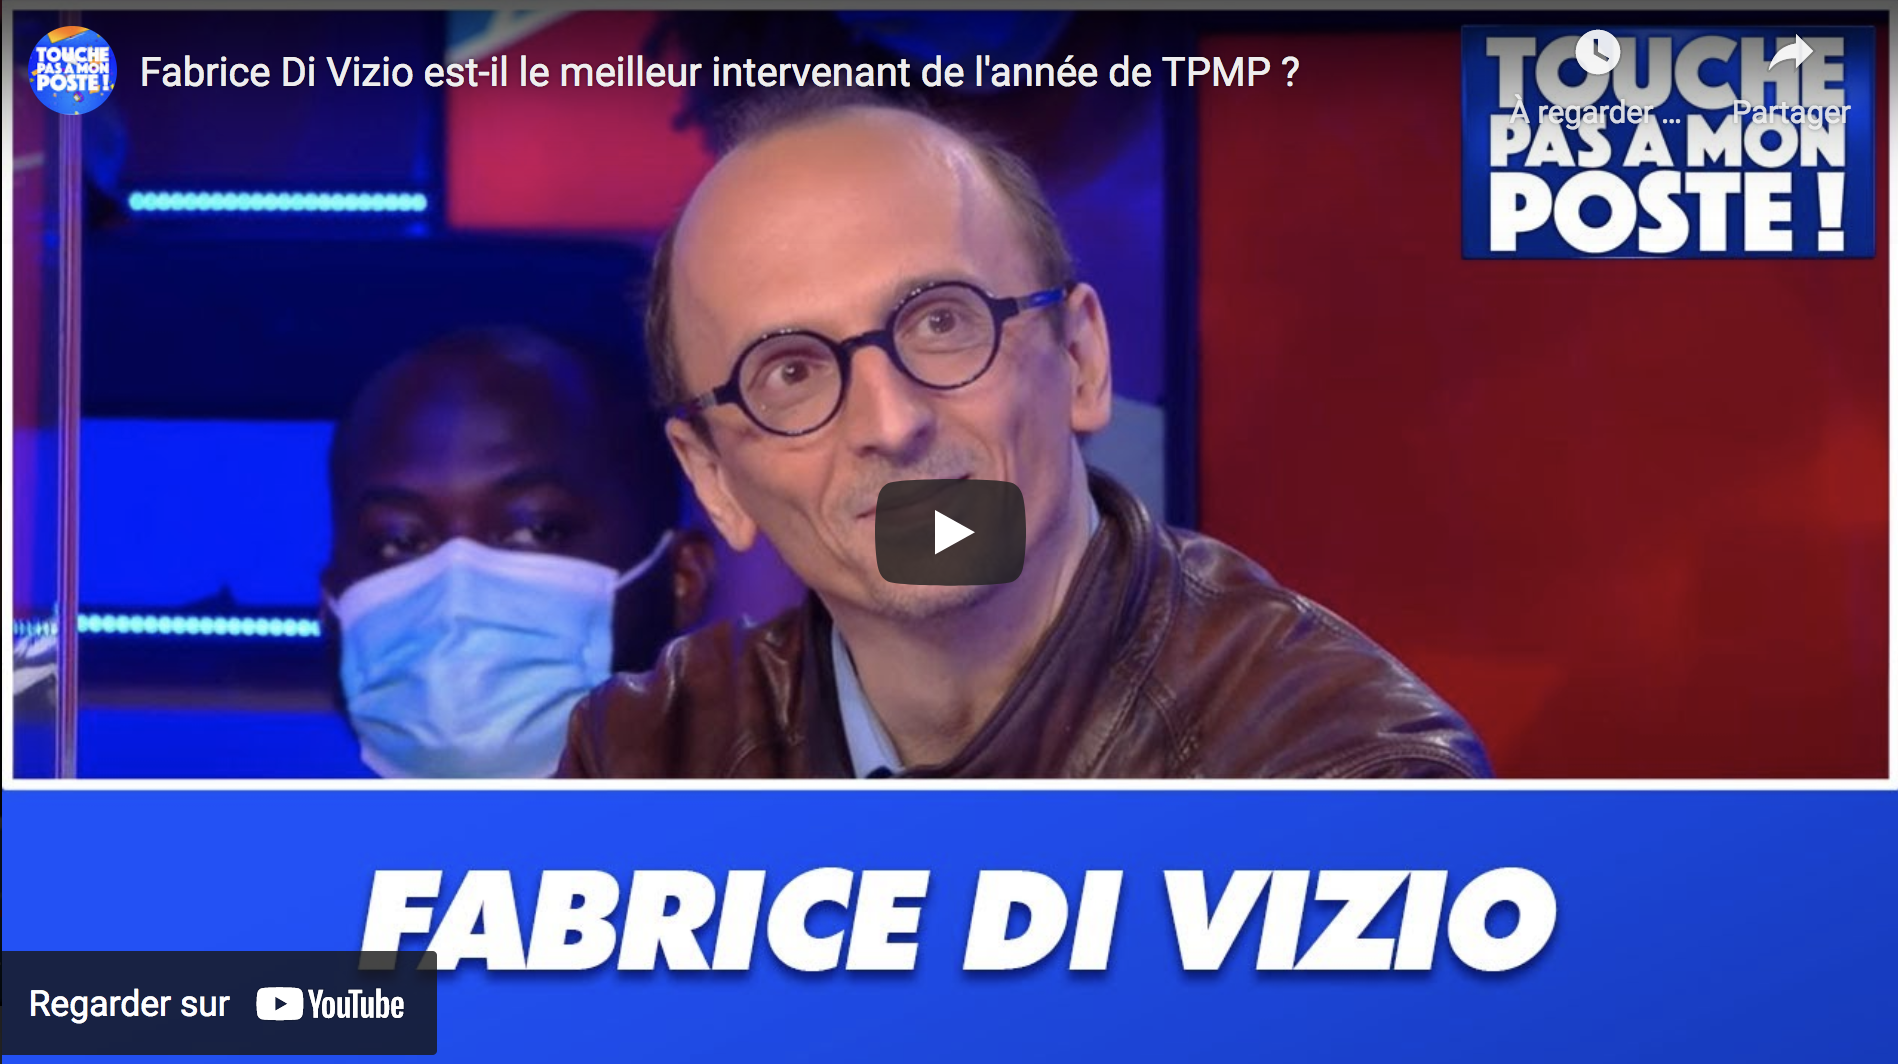 Fabrice Di Vizio est-il le meilleur intervenant de l’année de “TPMP” ? (DÉBAT)